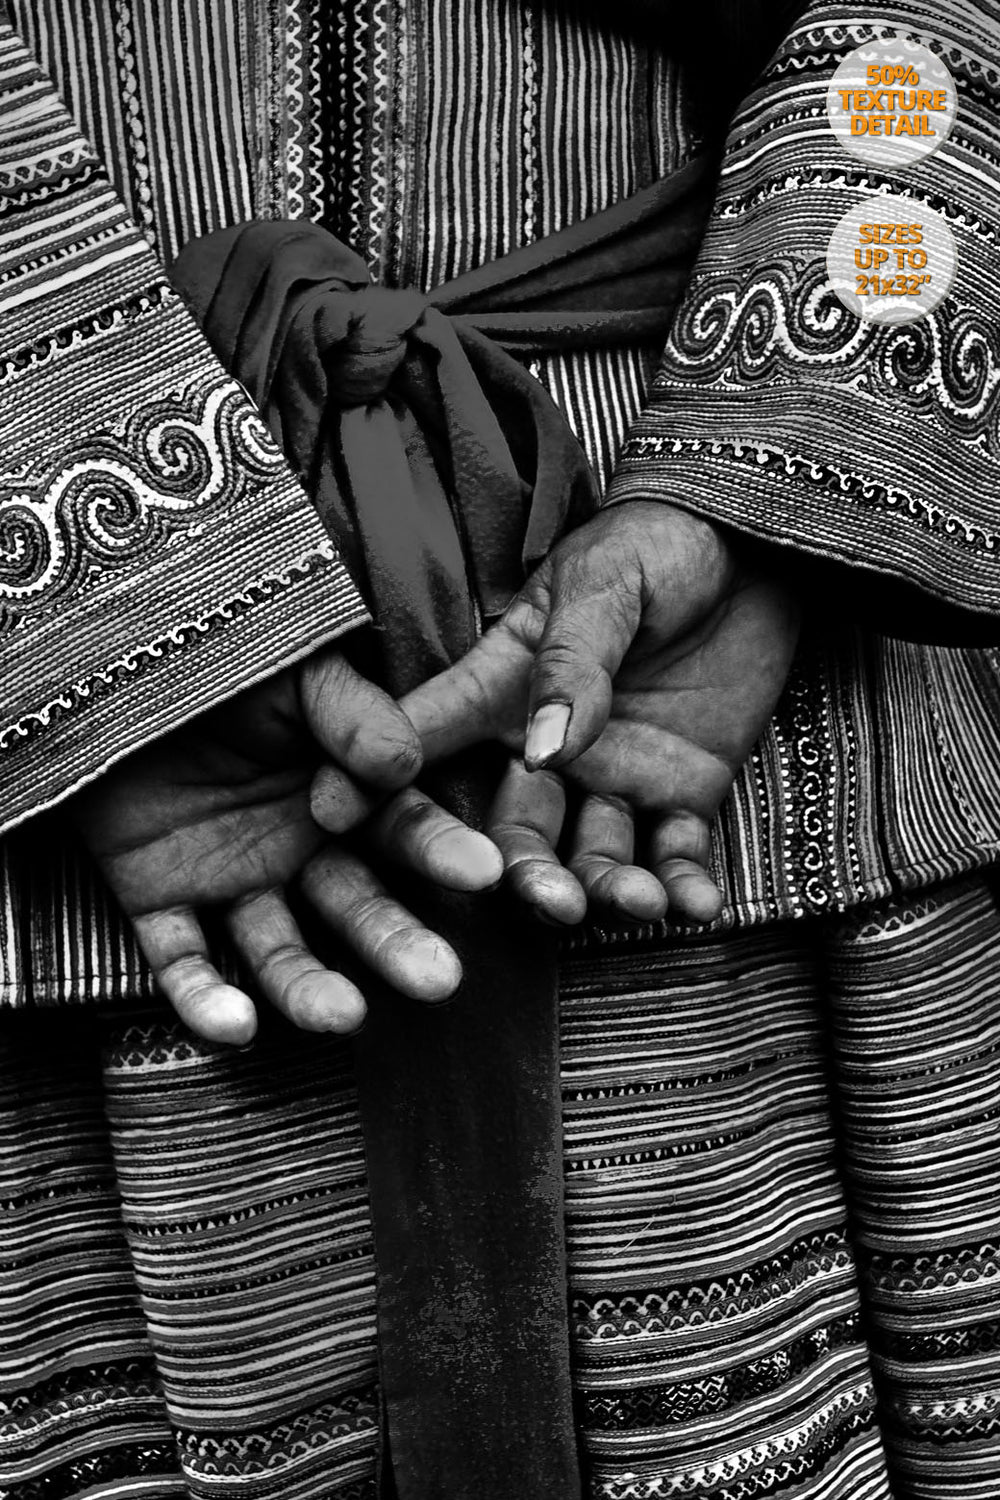 Detail of hands of a Hmong woman, Bac Ha, Vietnam.